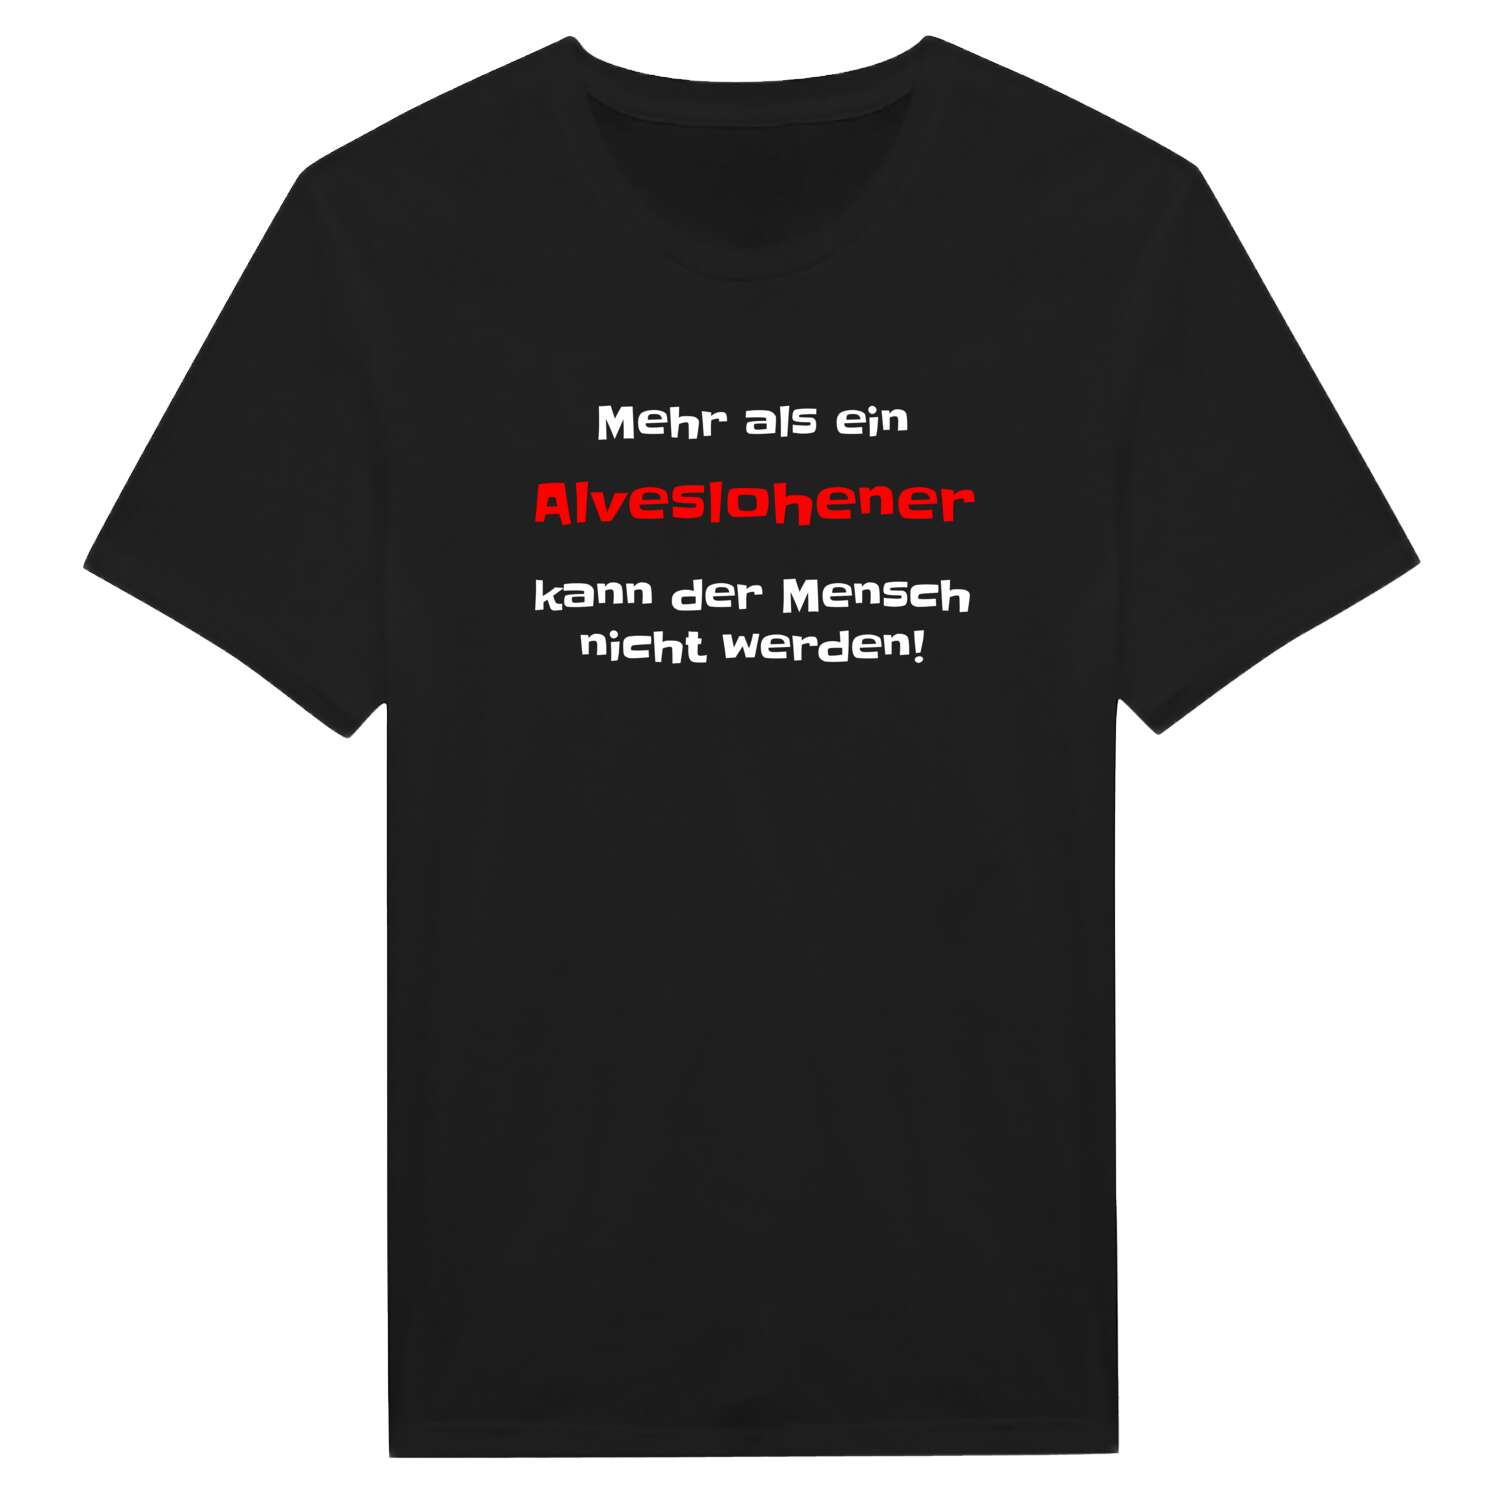 Alveslohe T-Shirt »Mehr als ein«